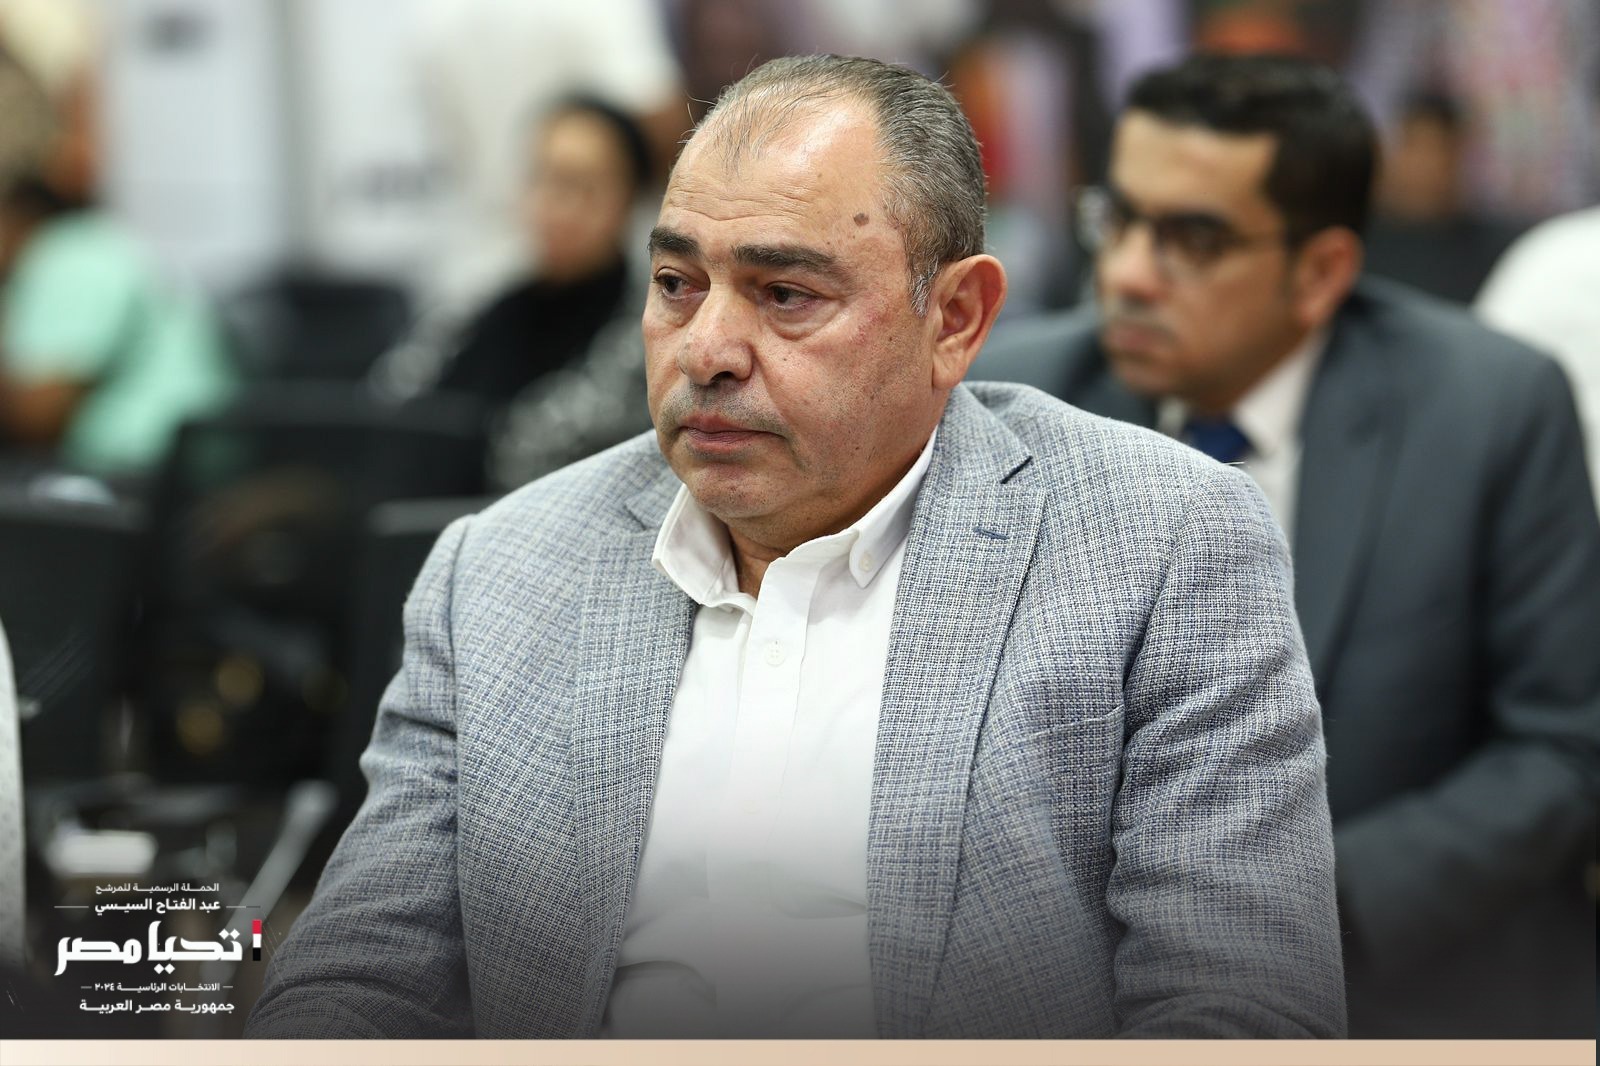 حملة المرشح الرئاسى عبد الفتاح السيسى تستقبل الاتحاد المصري لجميعات ومؤسسات المستثمرين (32)